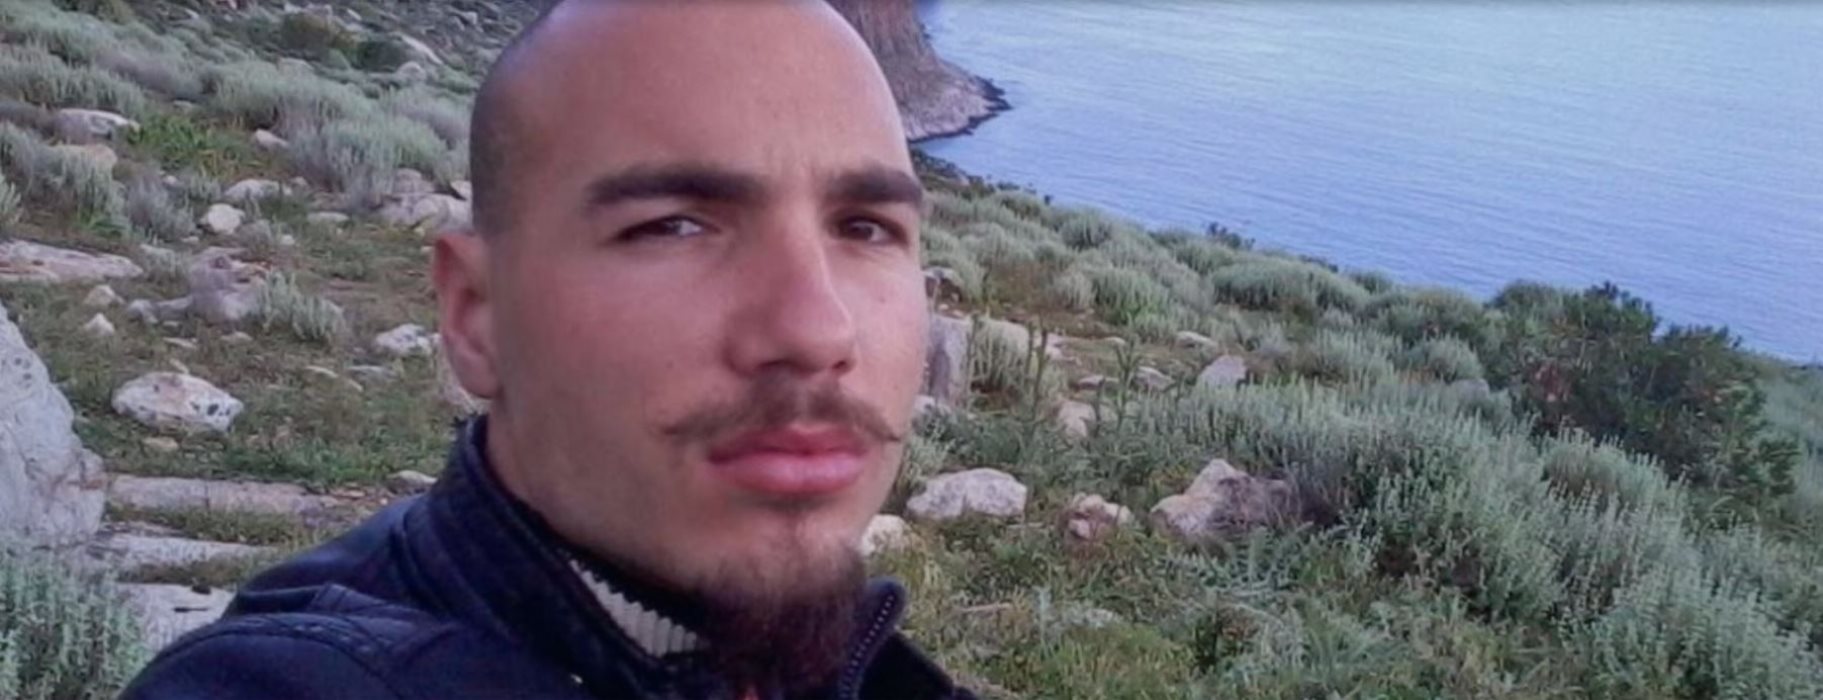 Νέο σοκ στην Κρήτη: Είχε συλληφθεί για εμπρησμό ο 27χρονος – «Μου άρεσε να ακούω τις σειρήνες!»